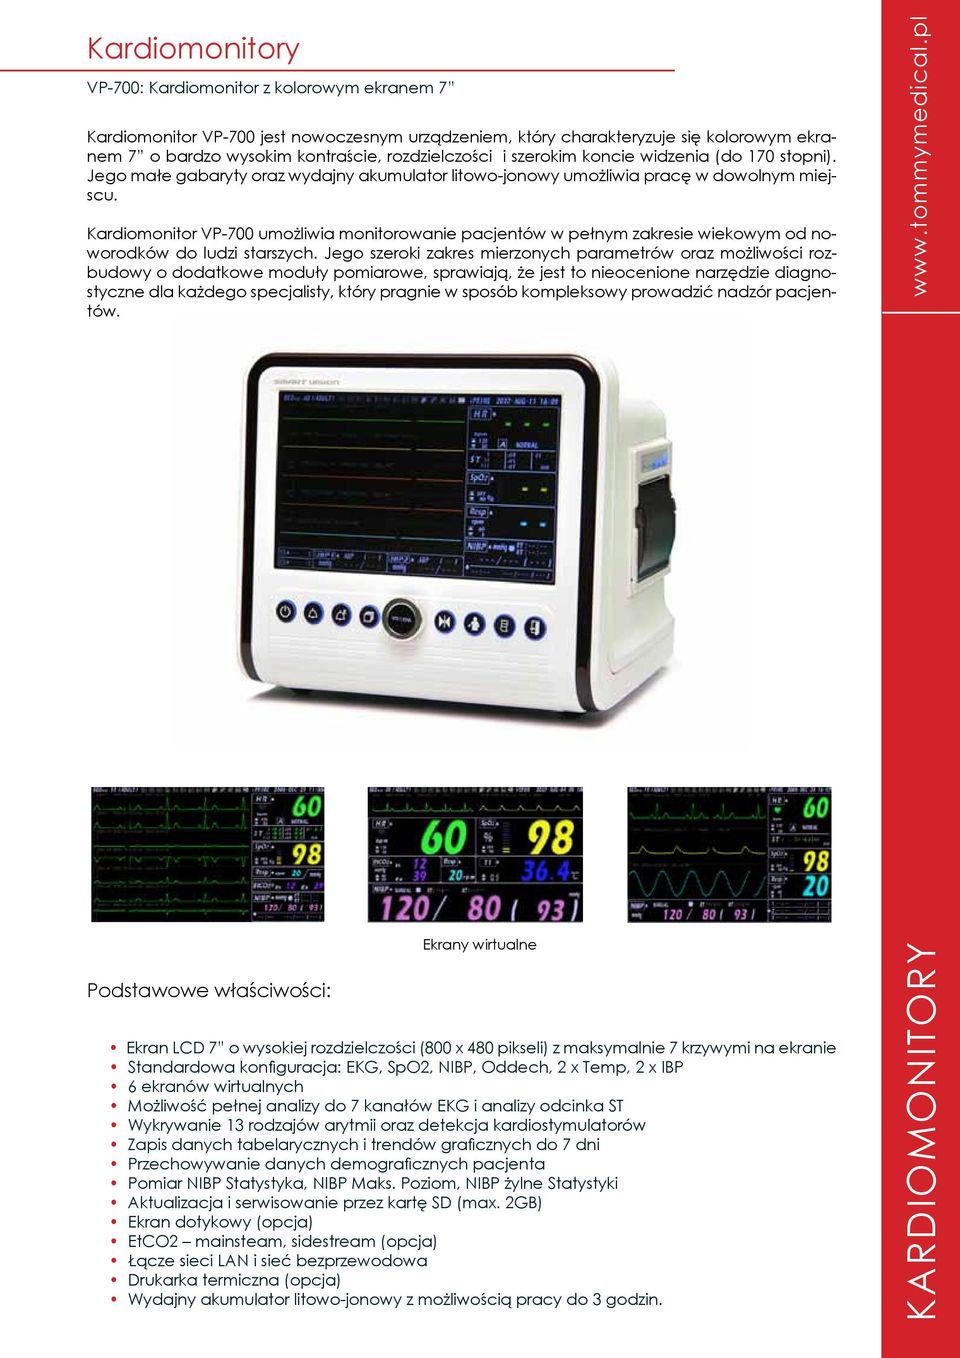 Kardiomonitor VP-700 umożliwia monitorowanie pacjentów w pełnym zakresie wiekowym od noworodków do ludzi starszych.